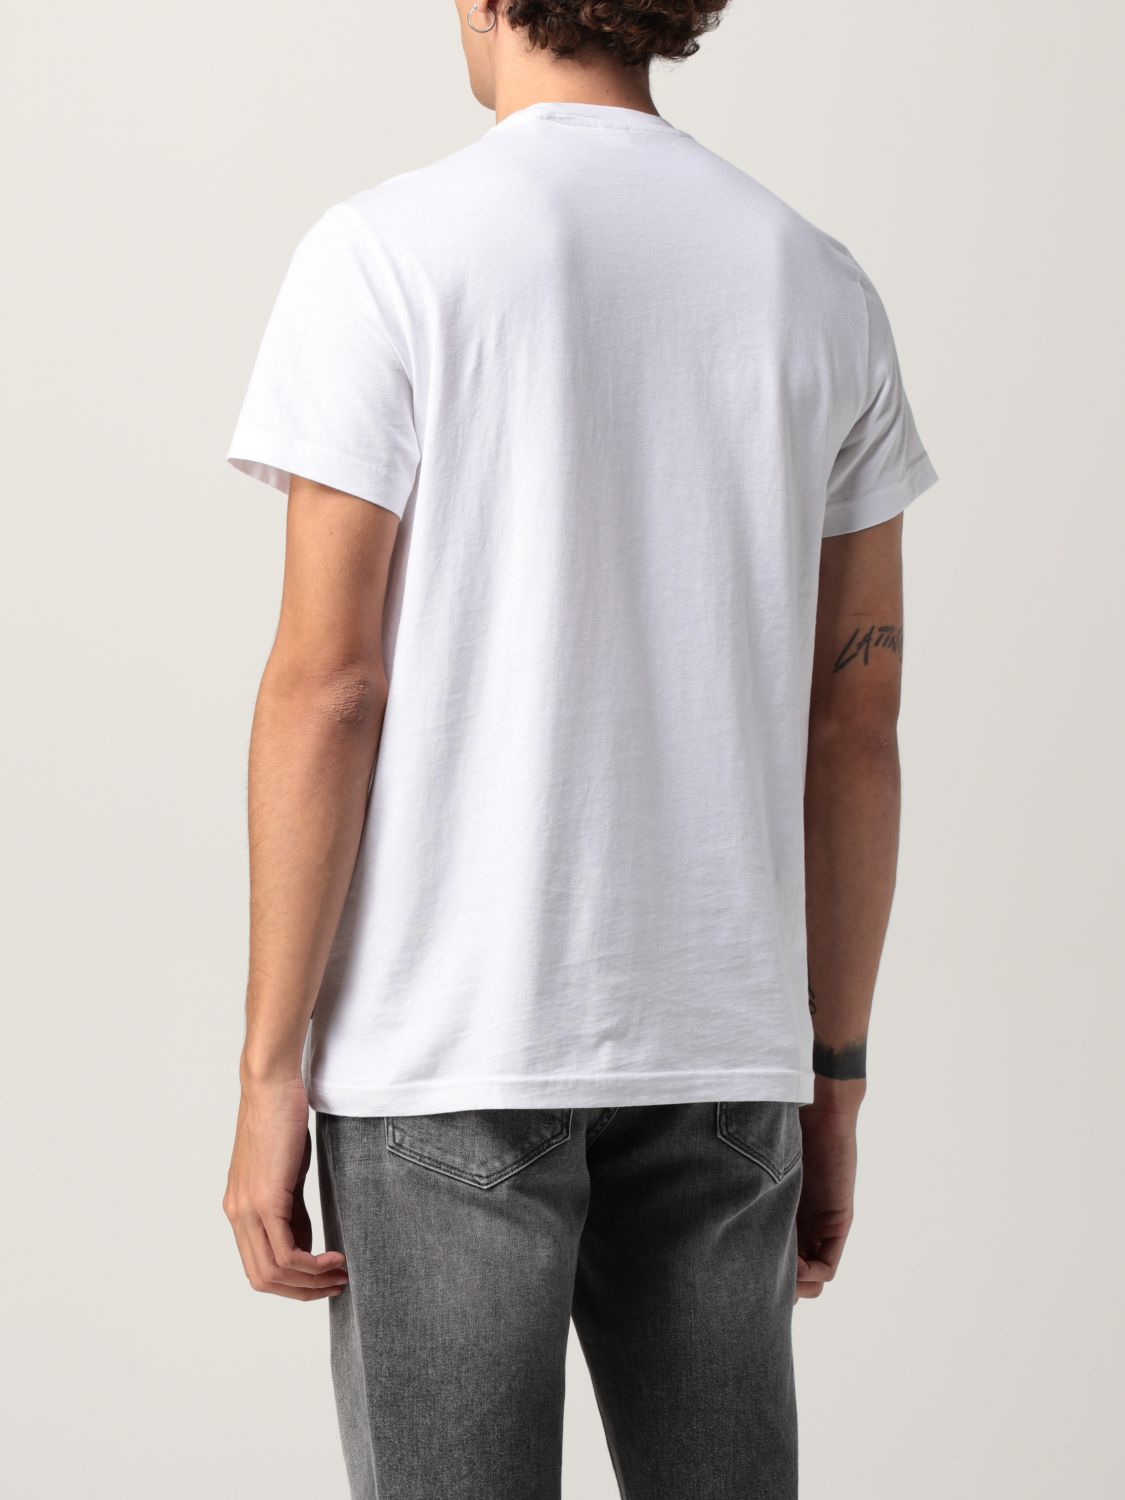 T-shirt Aspesi: T-shirt men Aspesi white 2